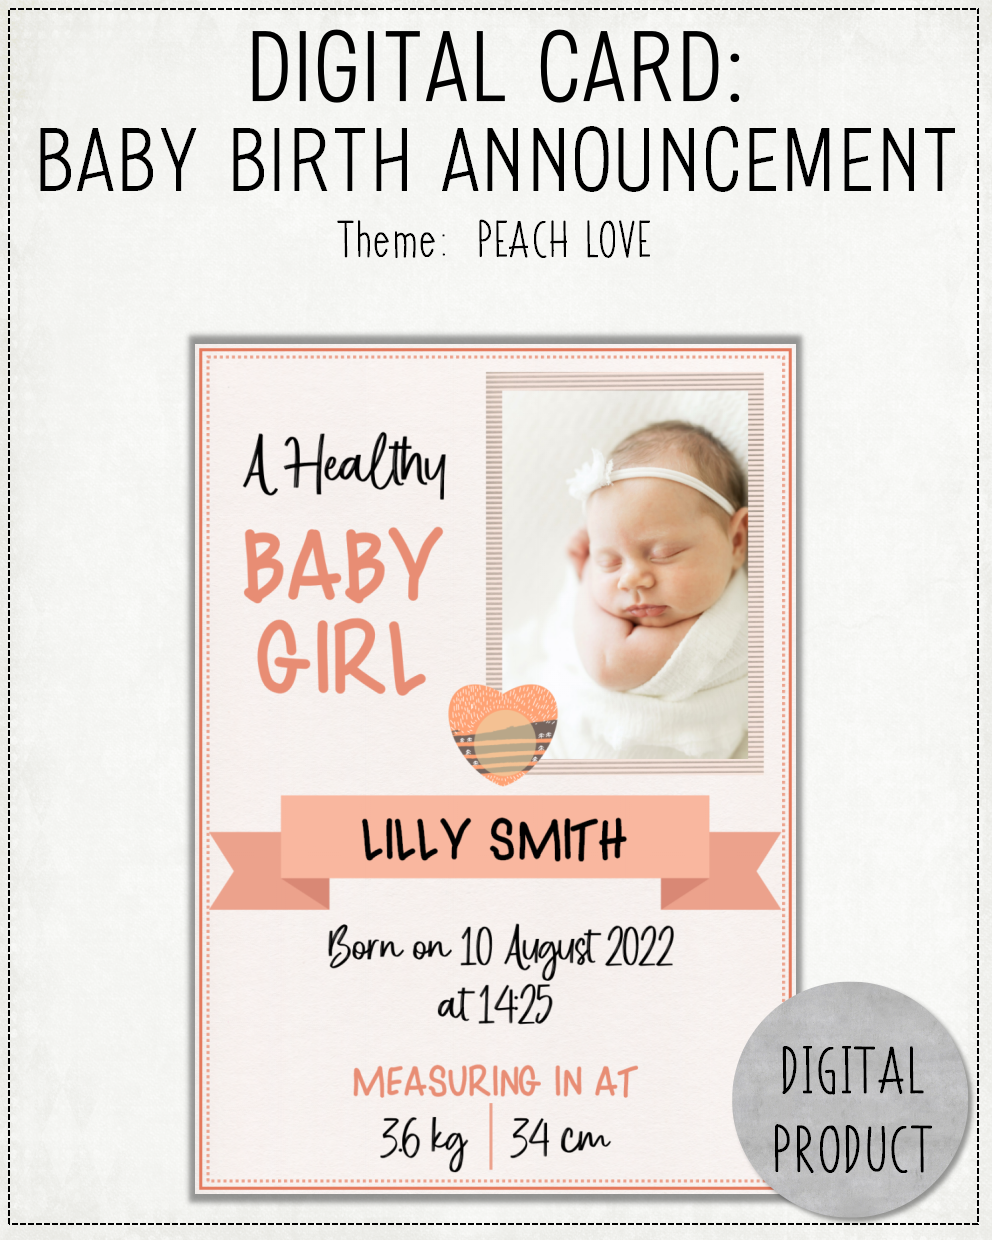 DIGITAL CARD: Baby Birth Announcement - Peach Love (English or Afrikaans)